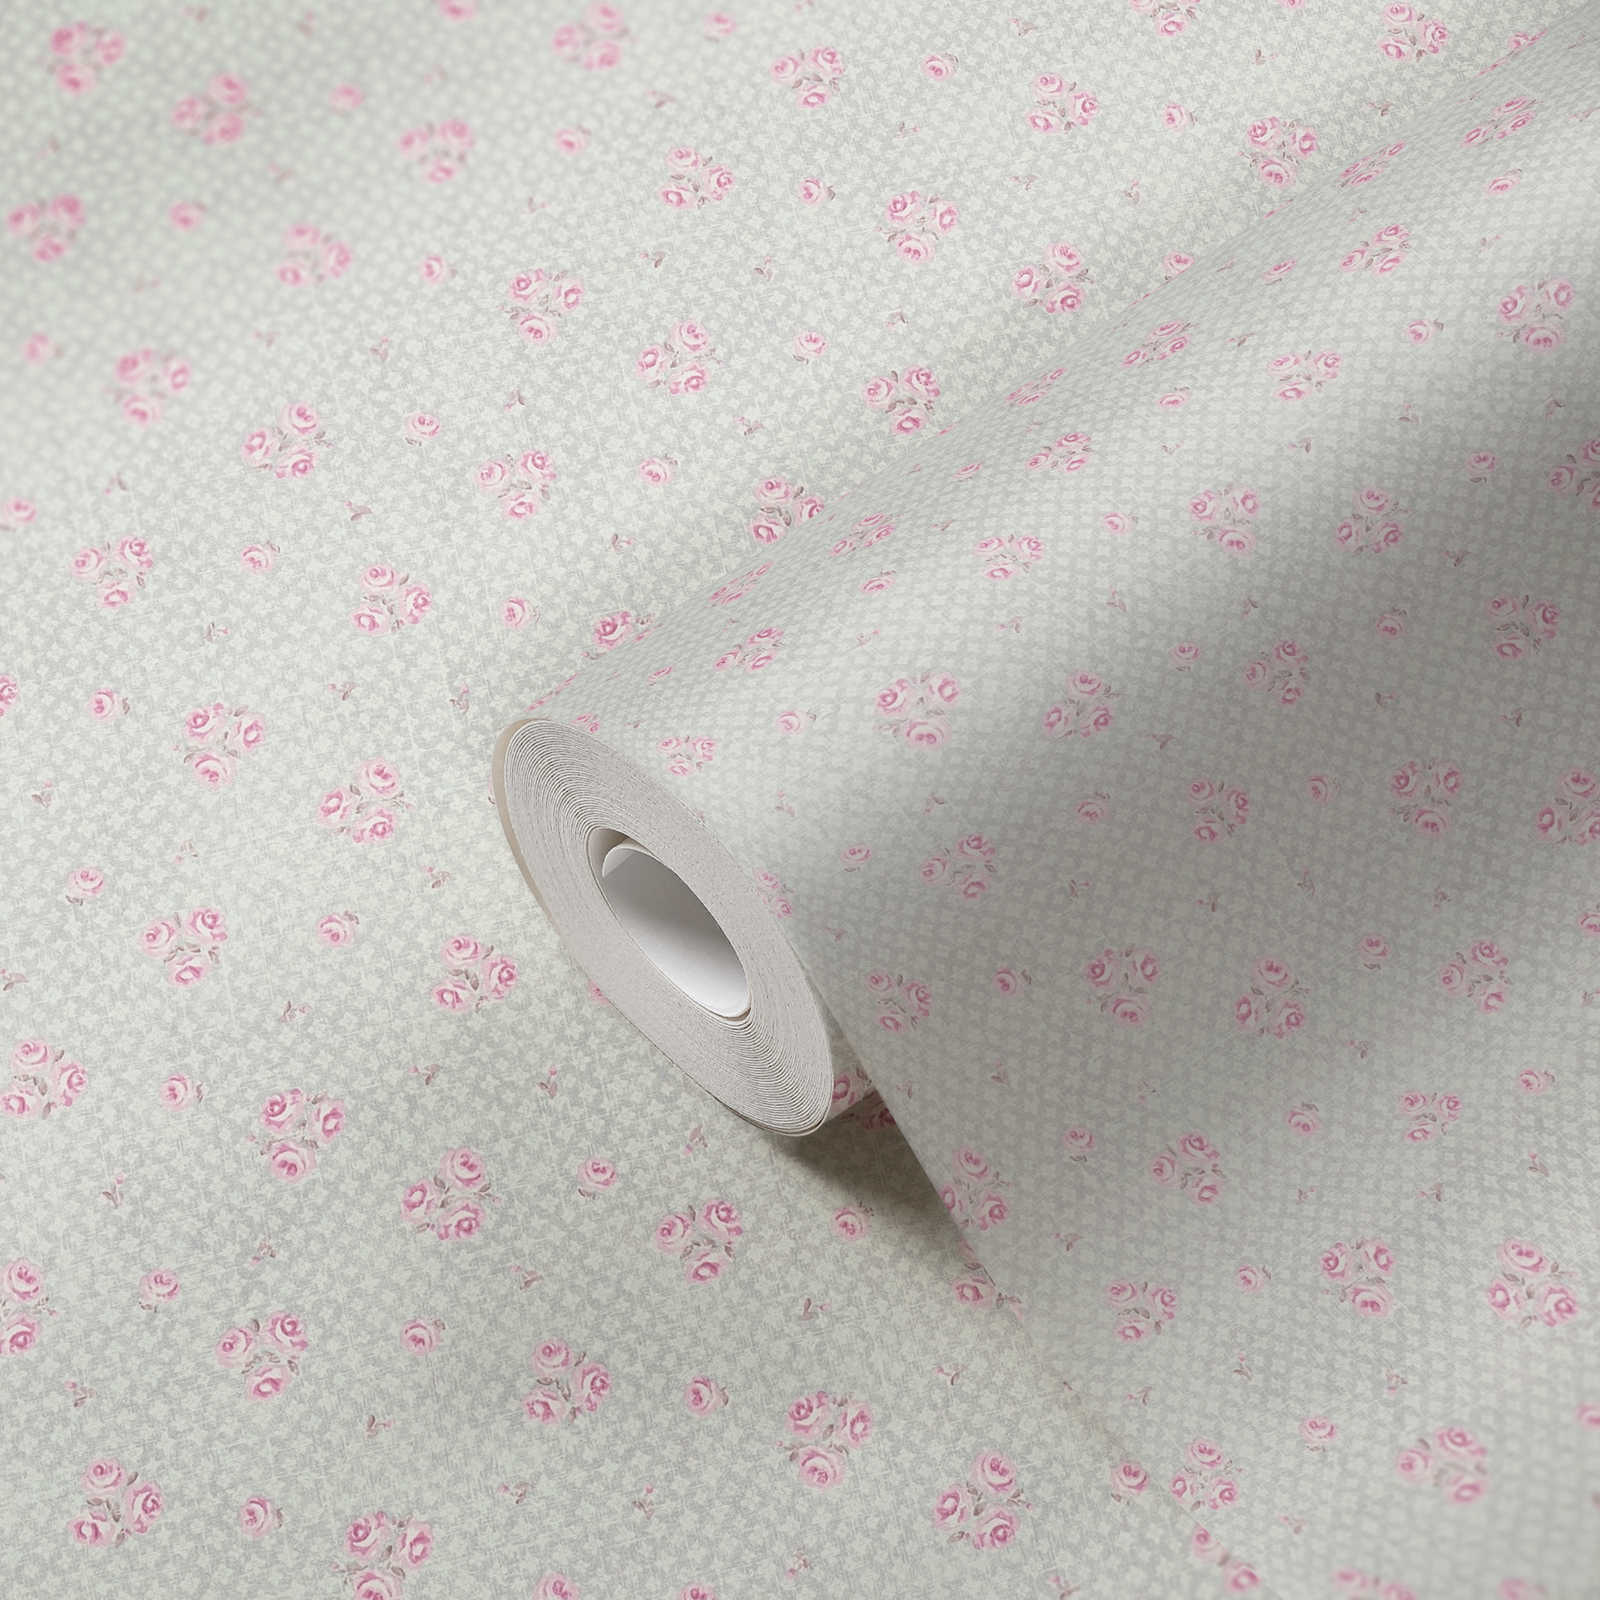             Carta da parati in tessuto non tessuto con motivo floreale in stile Shabby Chic - grigio, rosa, bianco
        